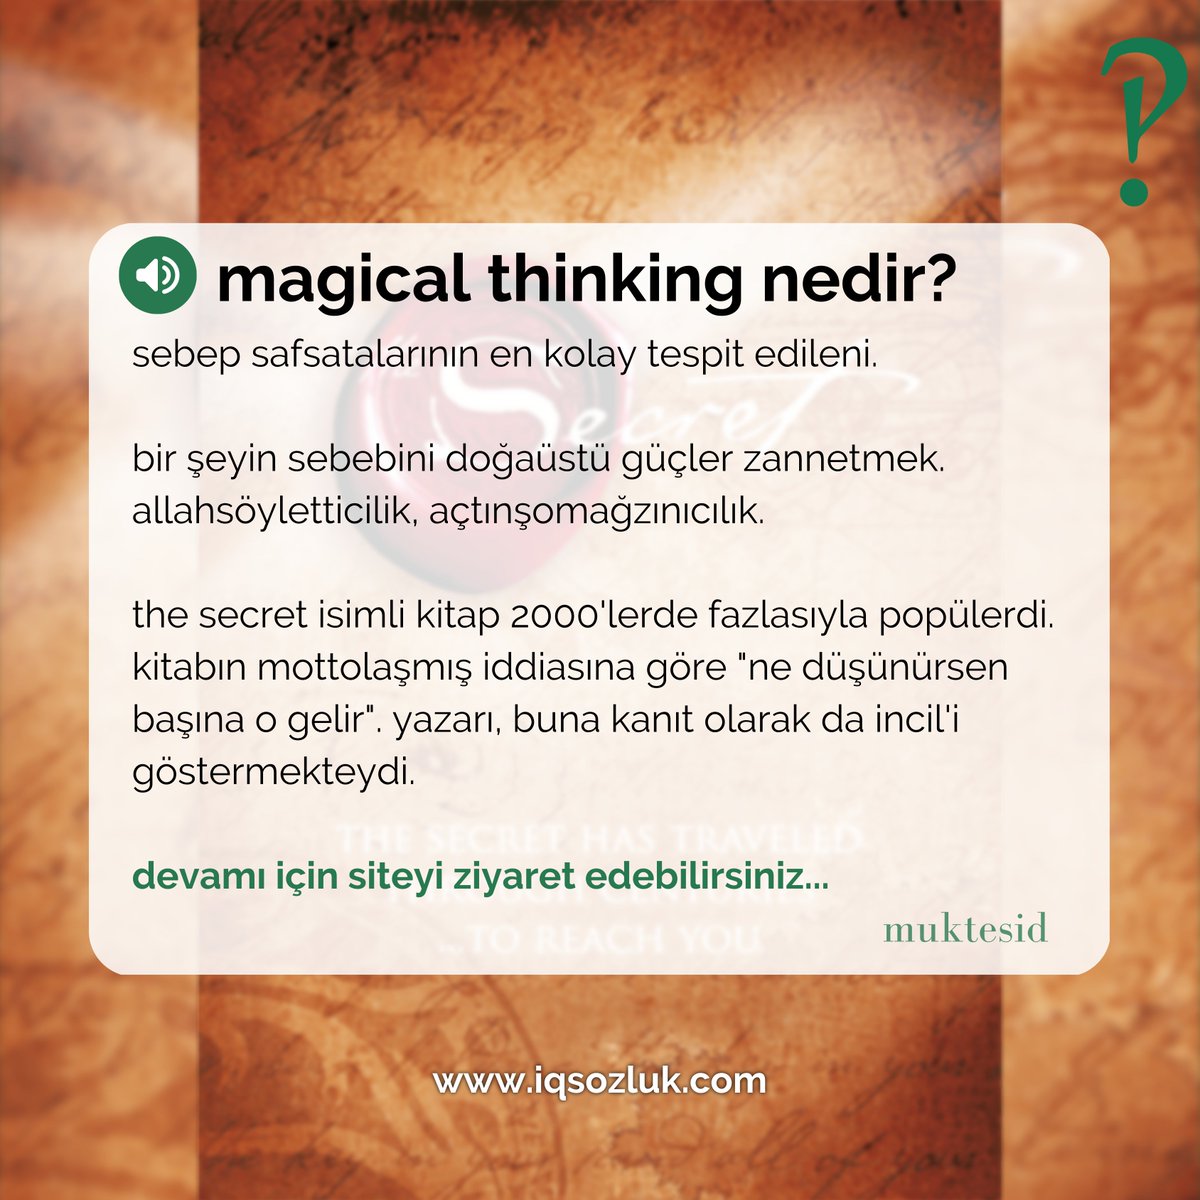 #MagicalThinking nedir? true scotsman yanıtladı:

iqsozluk.com/topic/magical-…

#safsata #mantık #thesecret